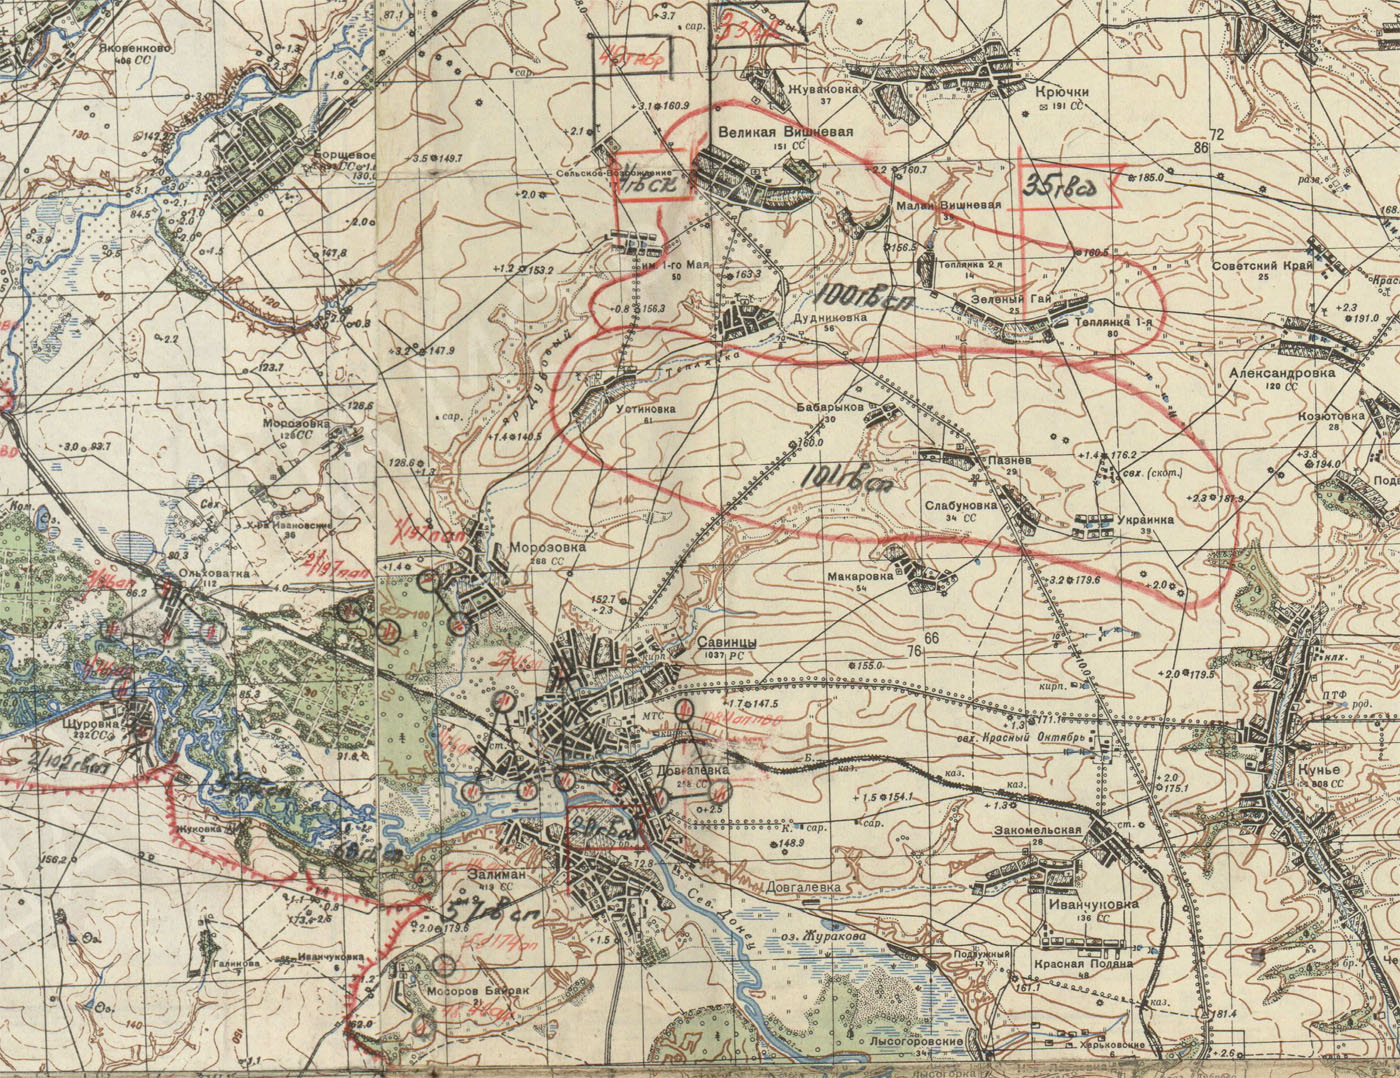 Отчетная карта штаба армии на 10 апреля 1943